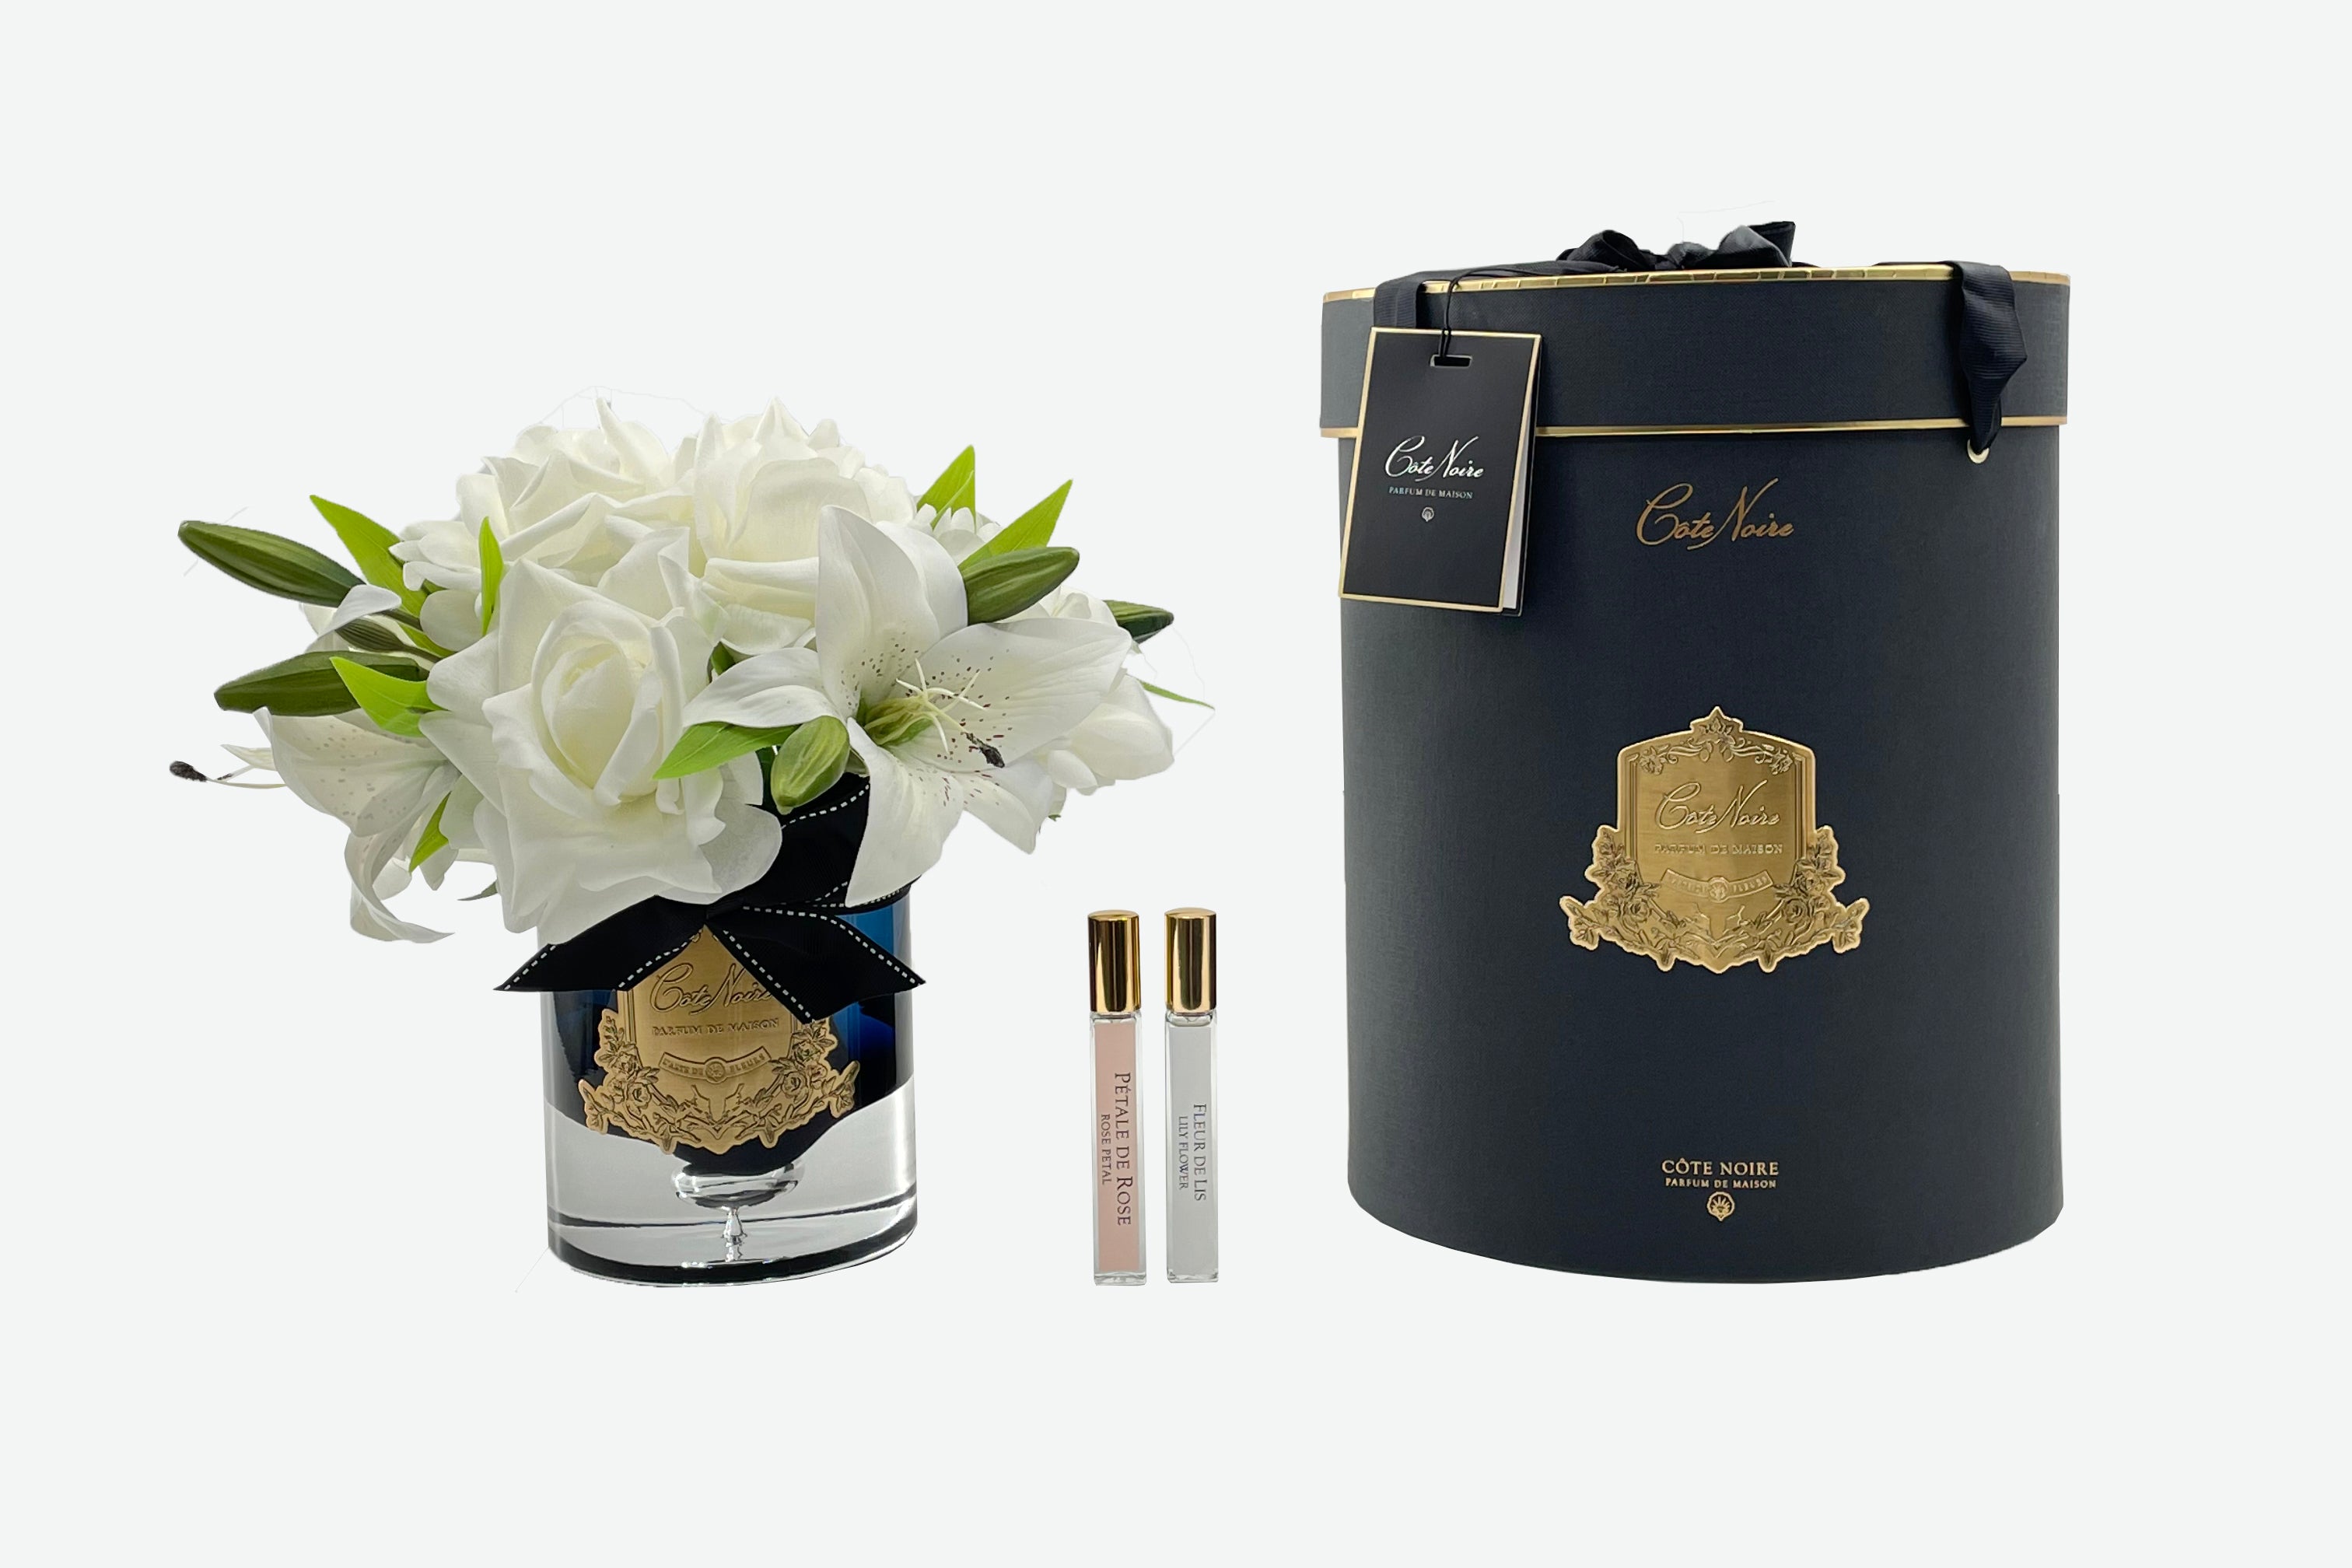 weisse luxury lilies duftrosen im glas neben schwarzer zylenderbox. dazwischen zwei parfumsprays. weisser hintergrund.